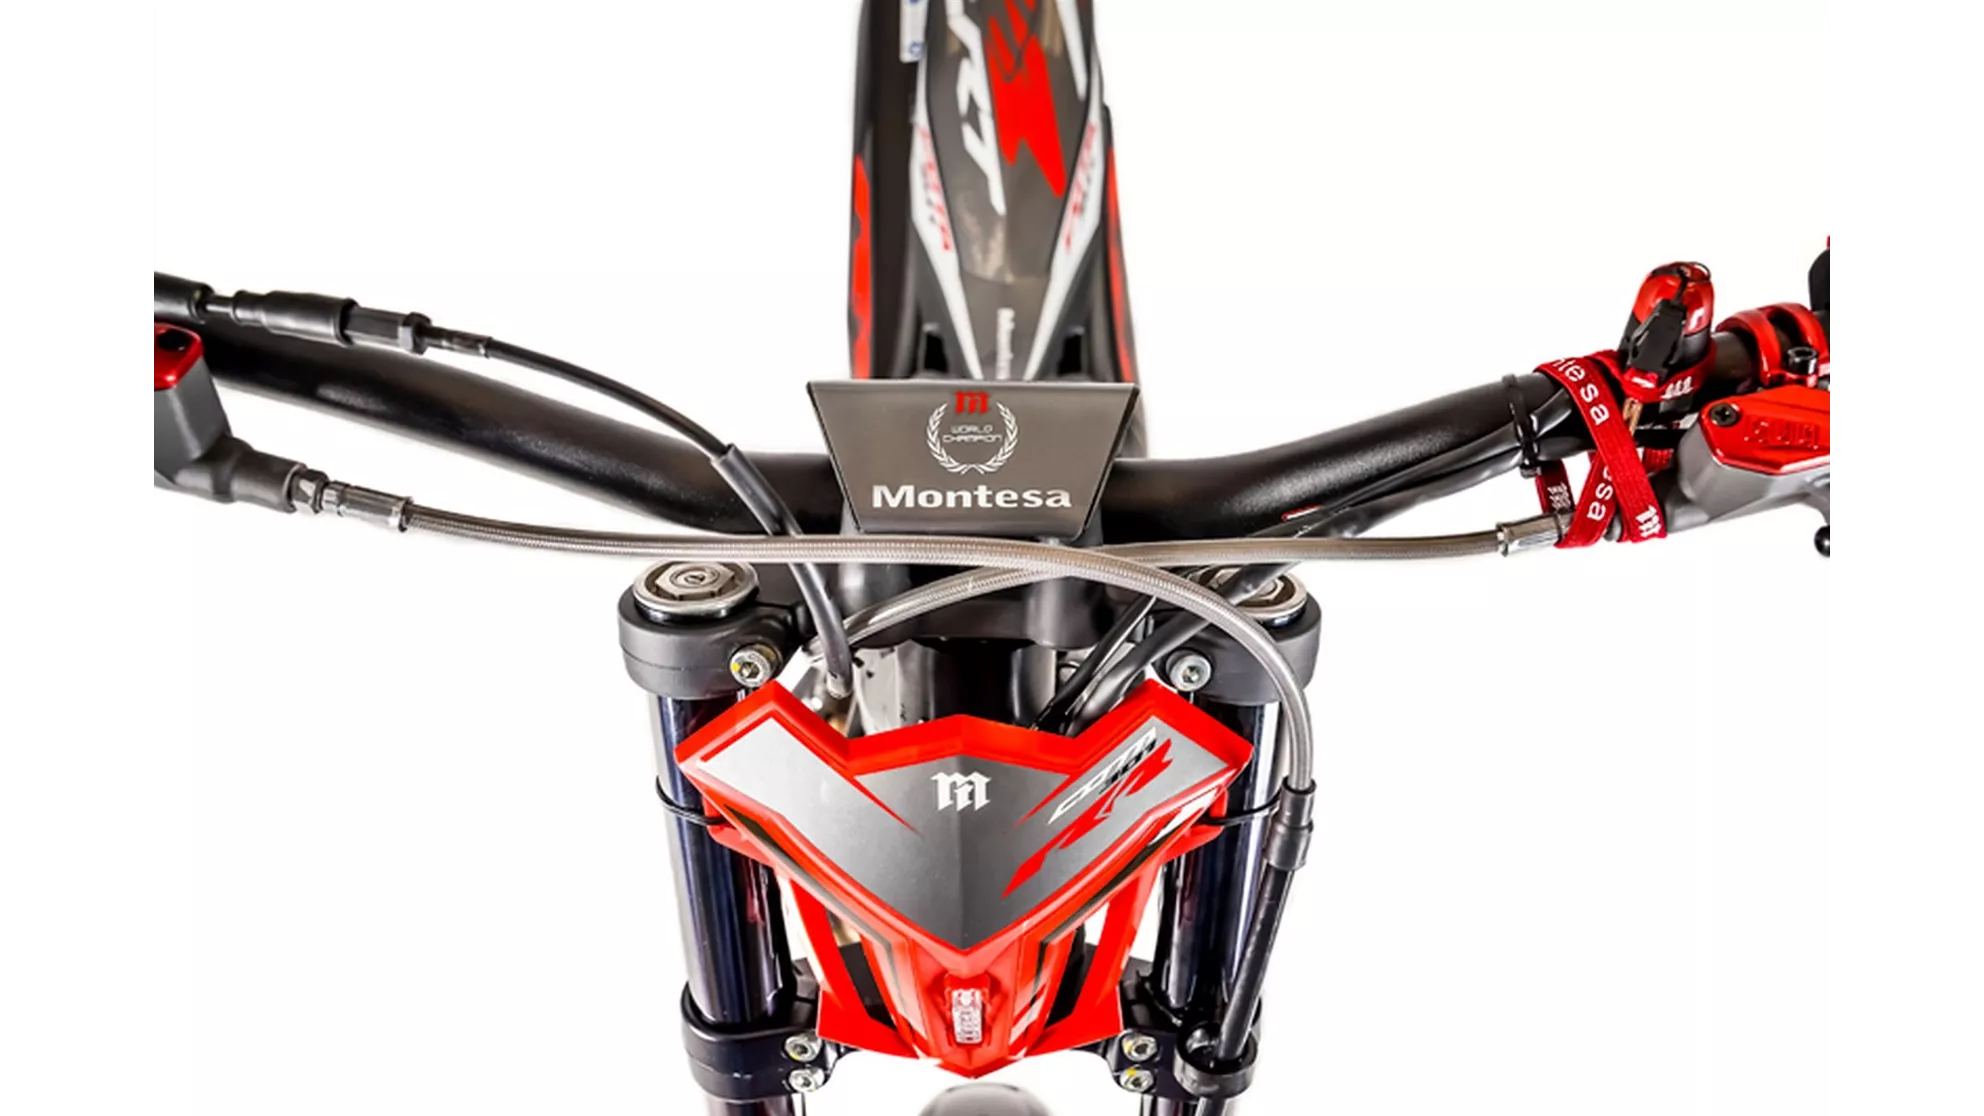 Red Moto COTA 301RR - Image 2